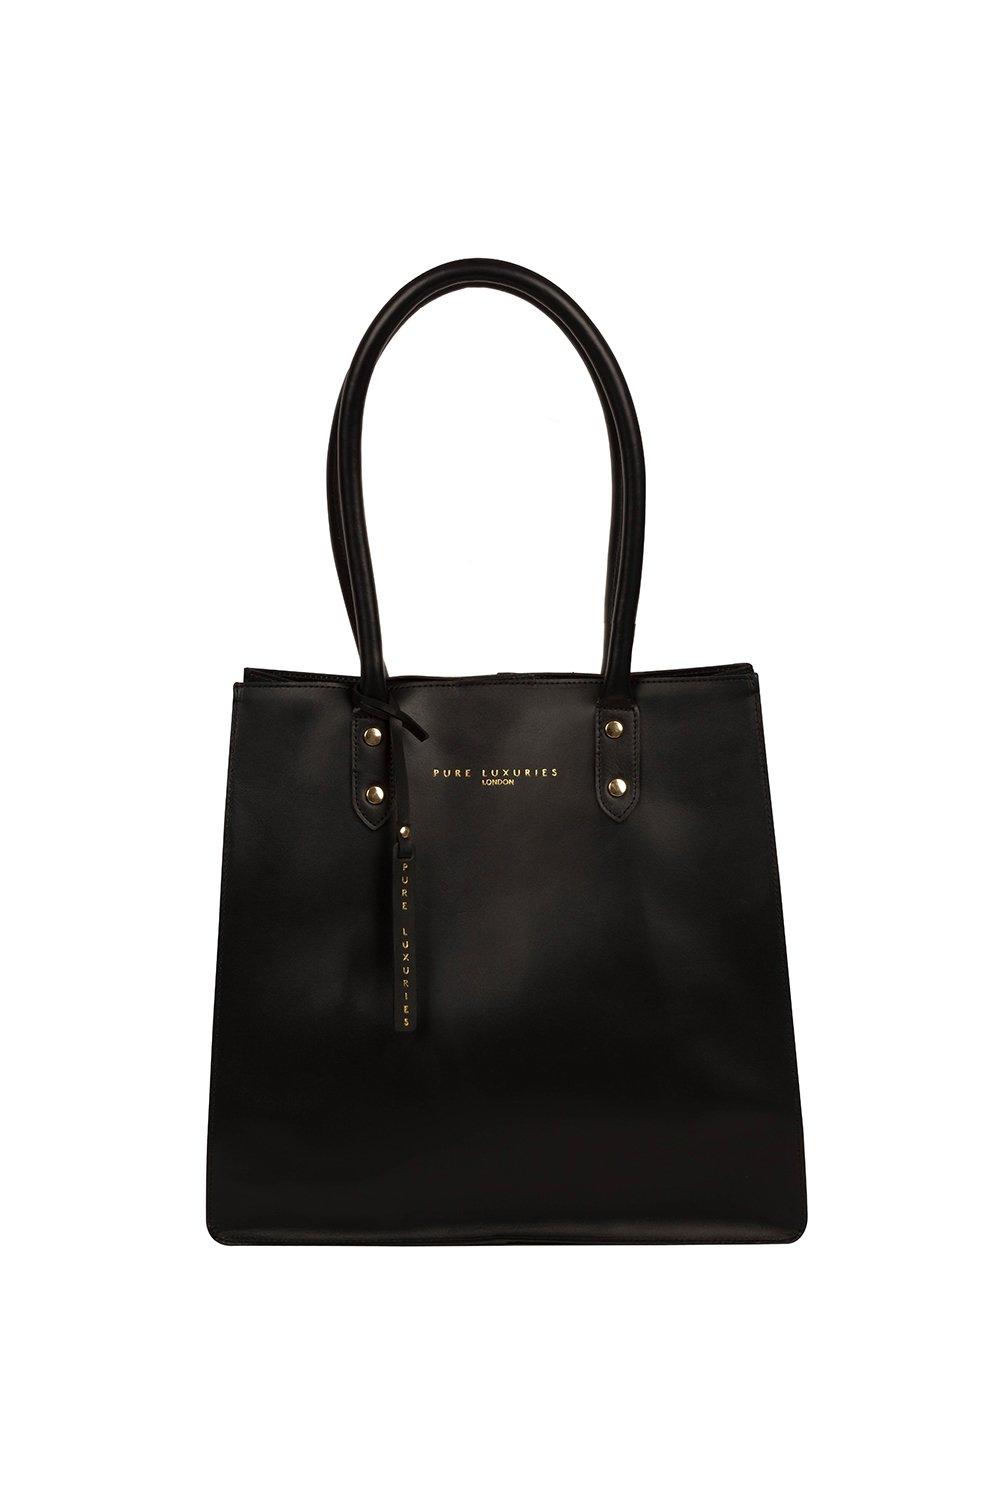 Сумка-шоппер Henley из кожи растительного дубления Pure Luxuries London, черный сумка тоут женская из мягкой пу кожи матовая 2020